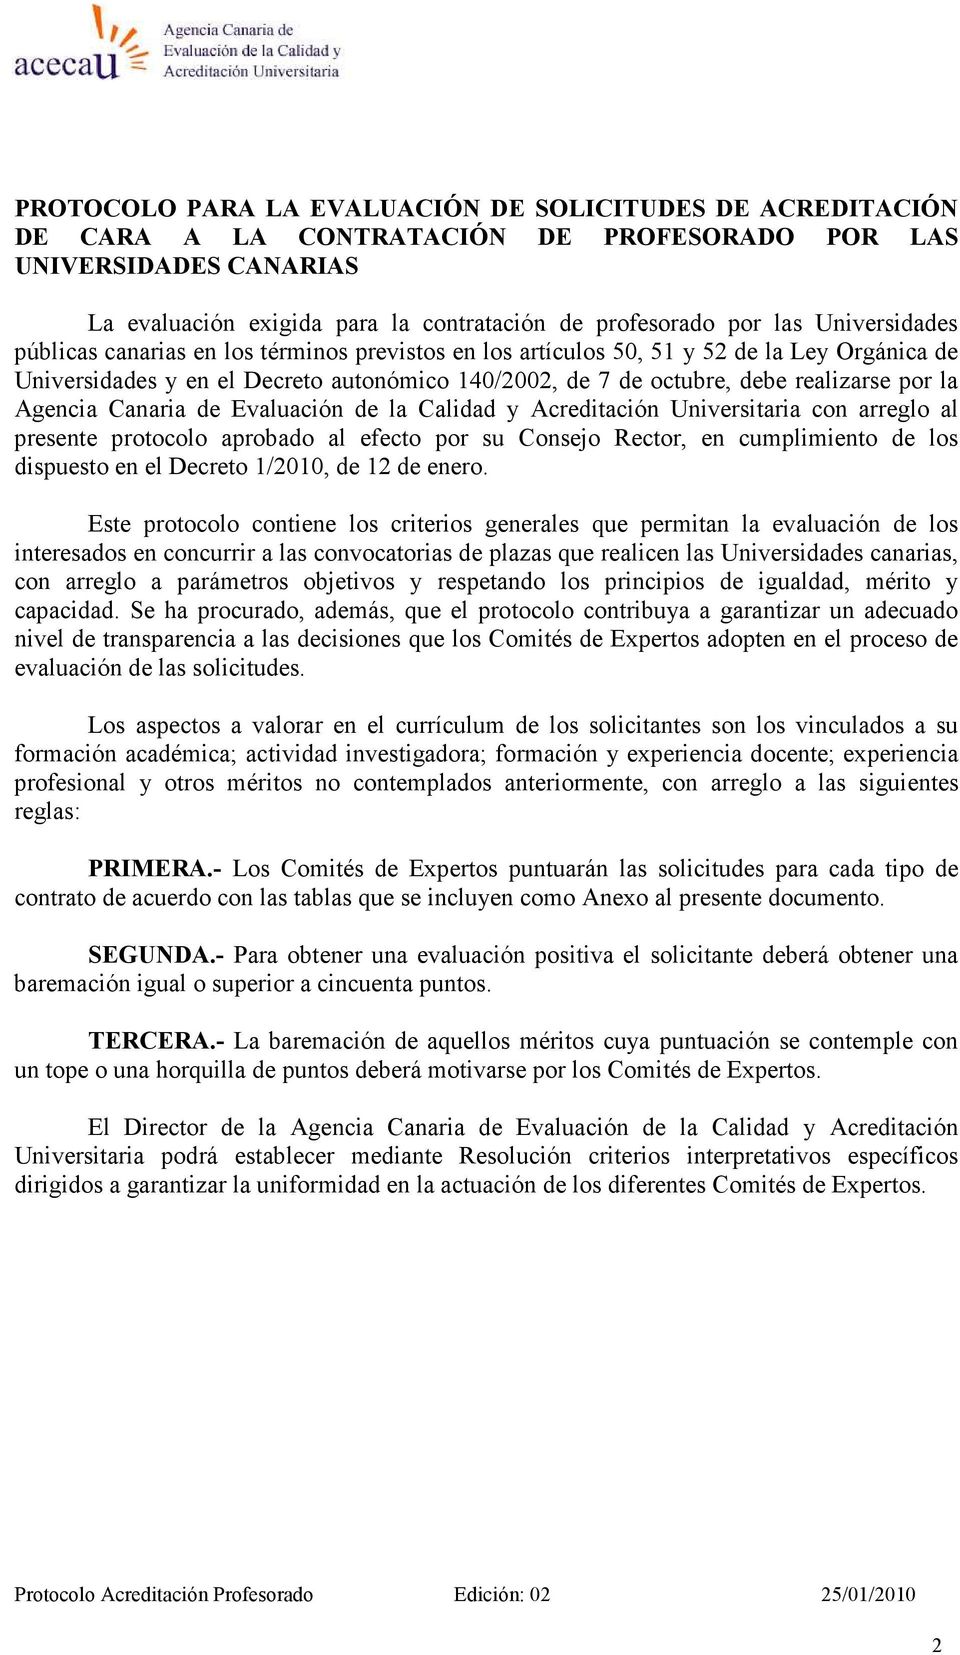 Agencia Canaria de Evaluación de la Calidad y Acreditación Universitaria con arreglo al presente protocolo aprobado al efecto por su Consejo Rector, en cumplimiento de los dispuesto en el Decreto